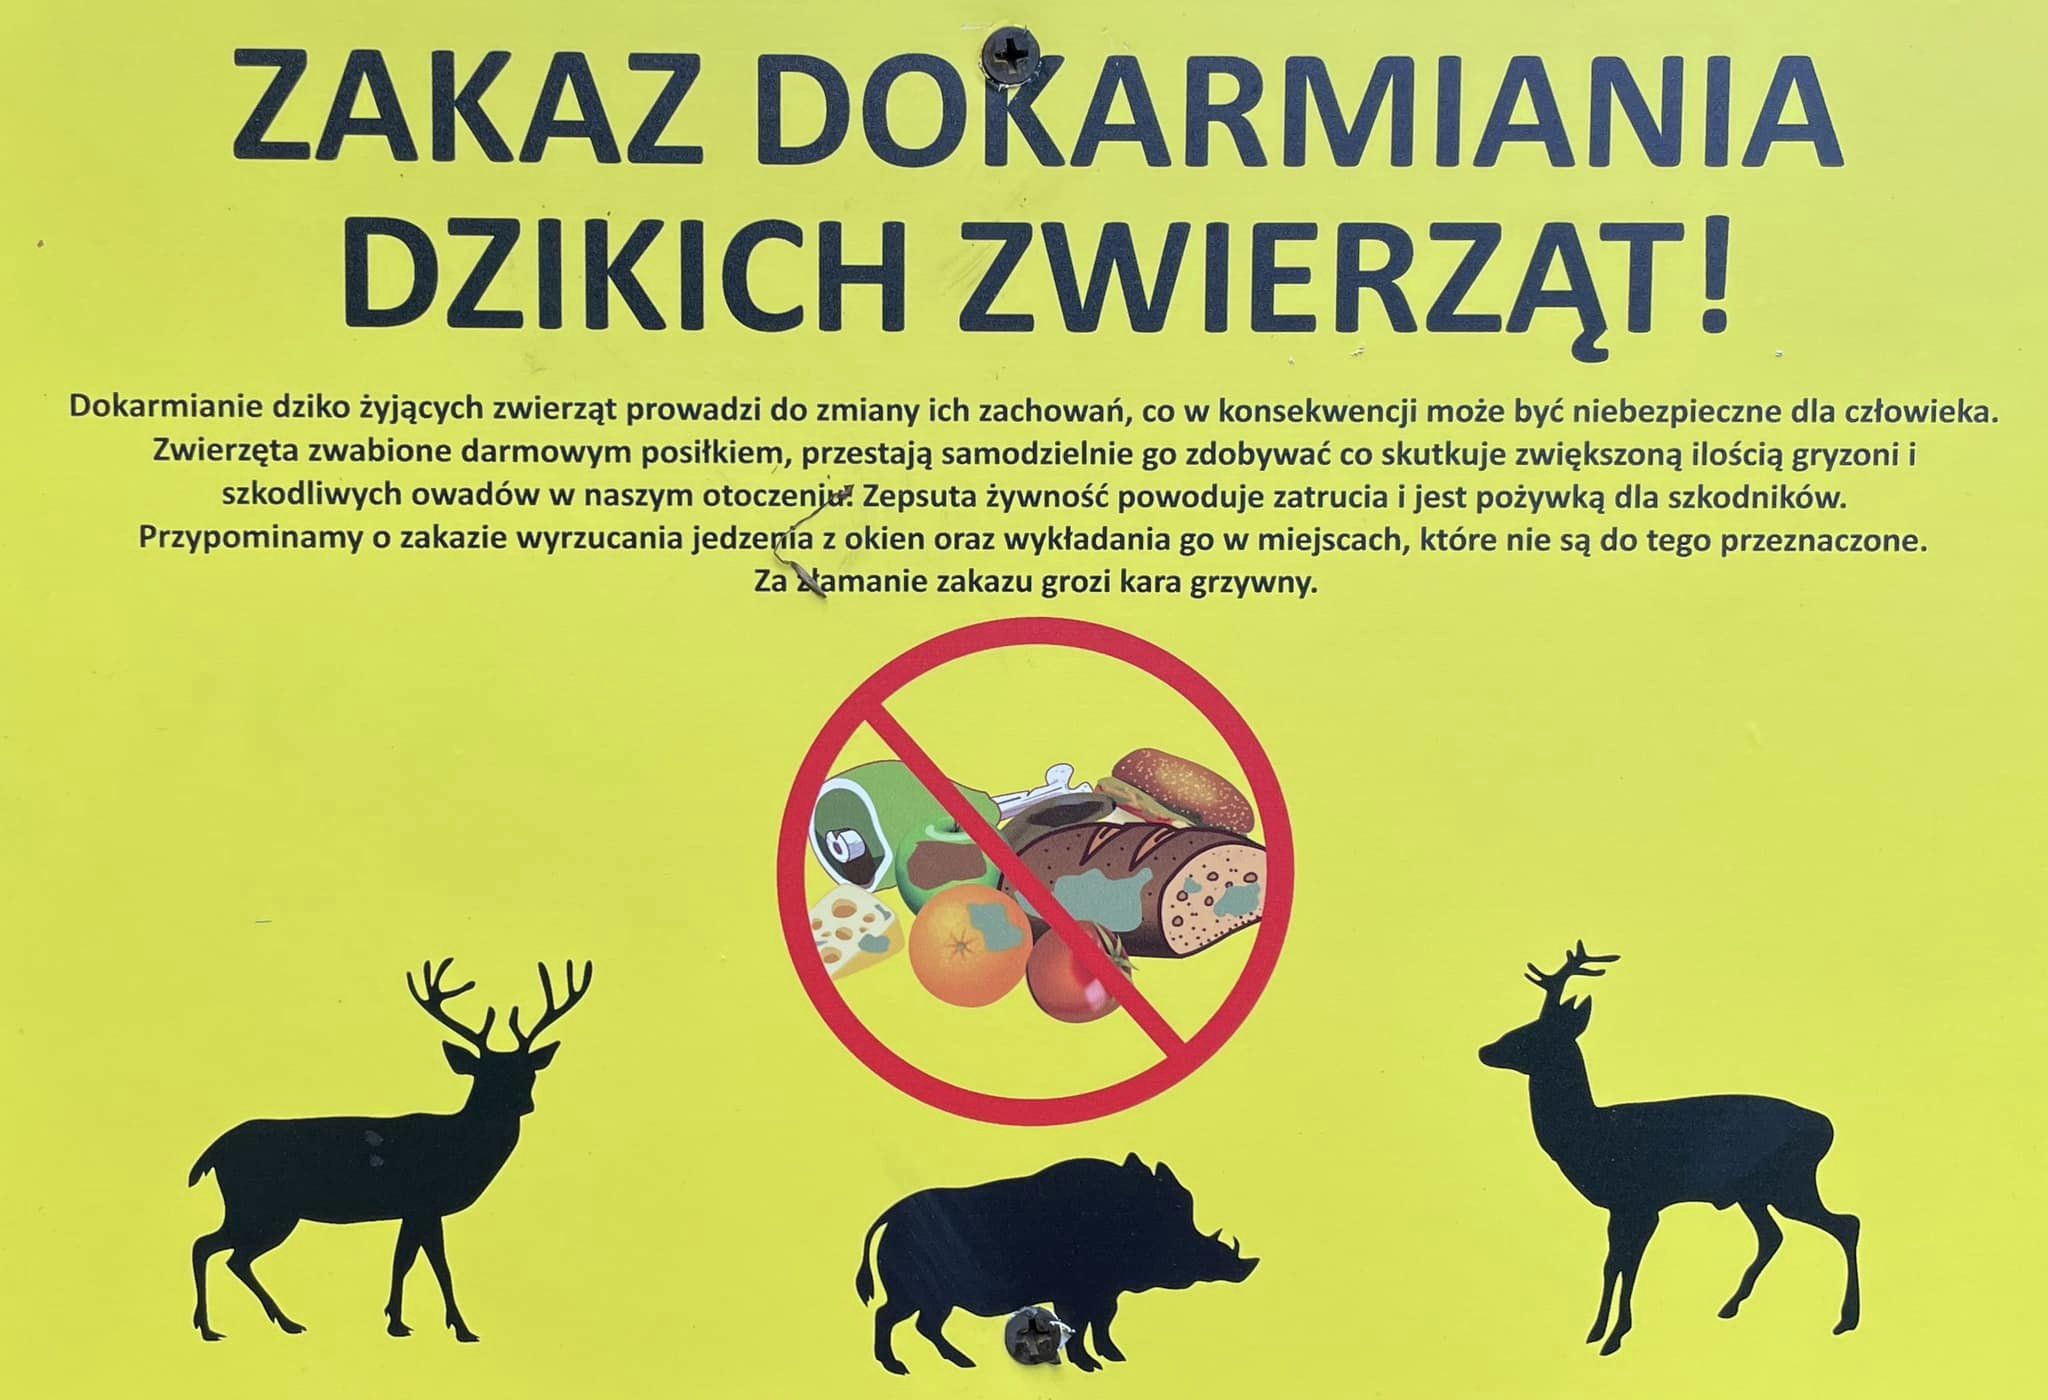 Zakaz dokarmiania dzikich zwierząt